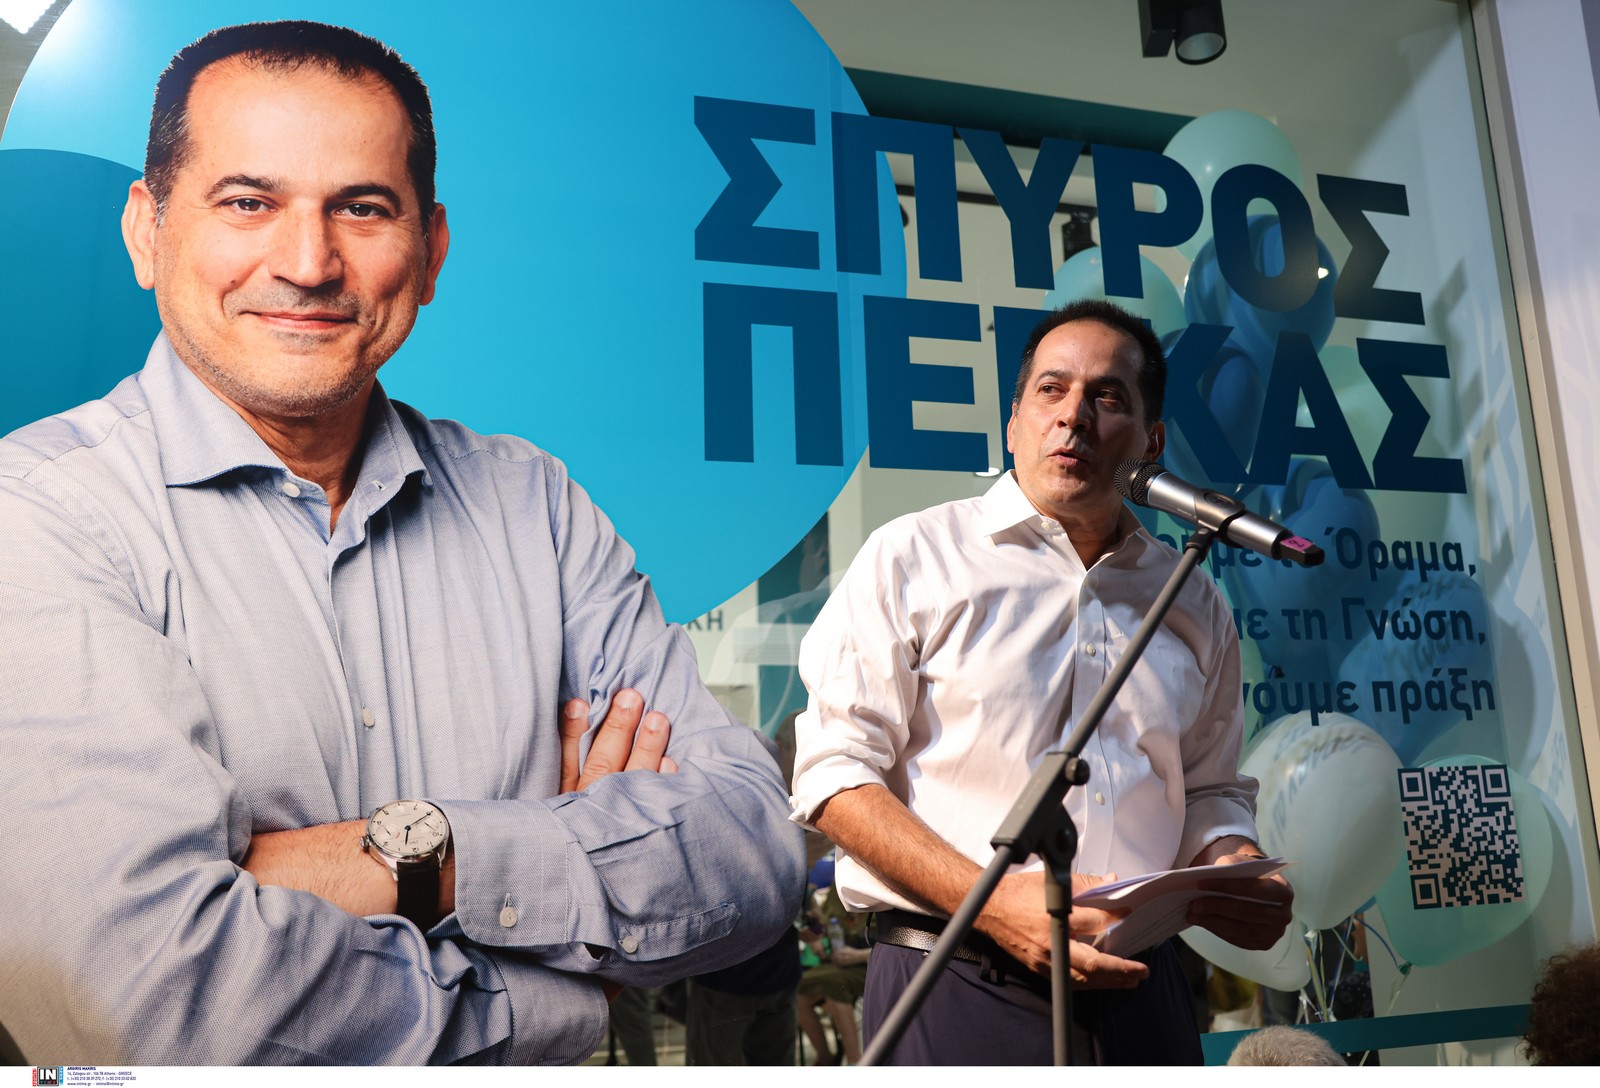 Σπύρος Πέγκας: “Είμαστε η δύναμη της αλλαγής και της προόδου” για τη Θεσσαλονίκη